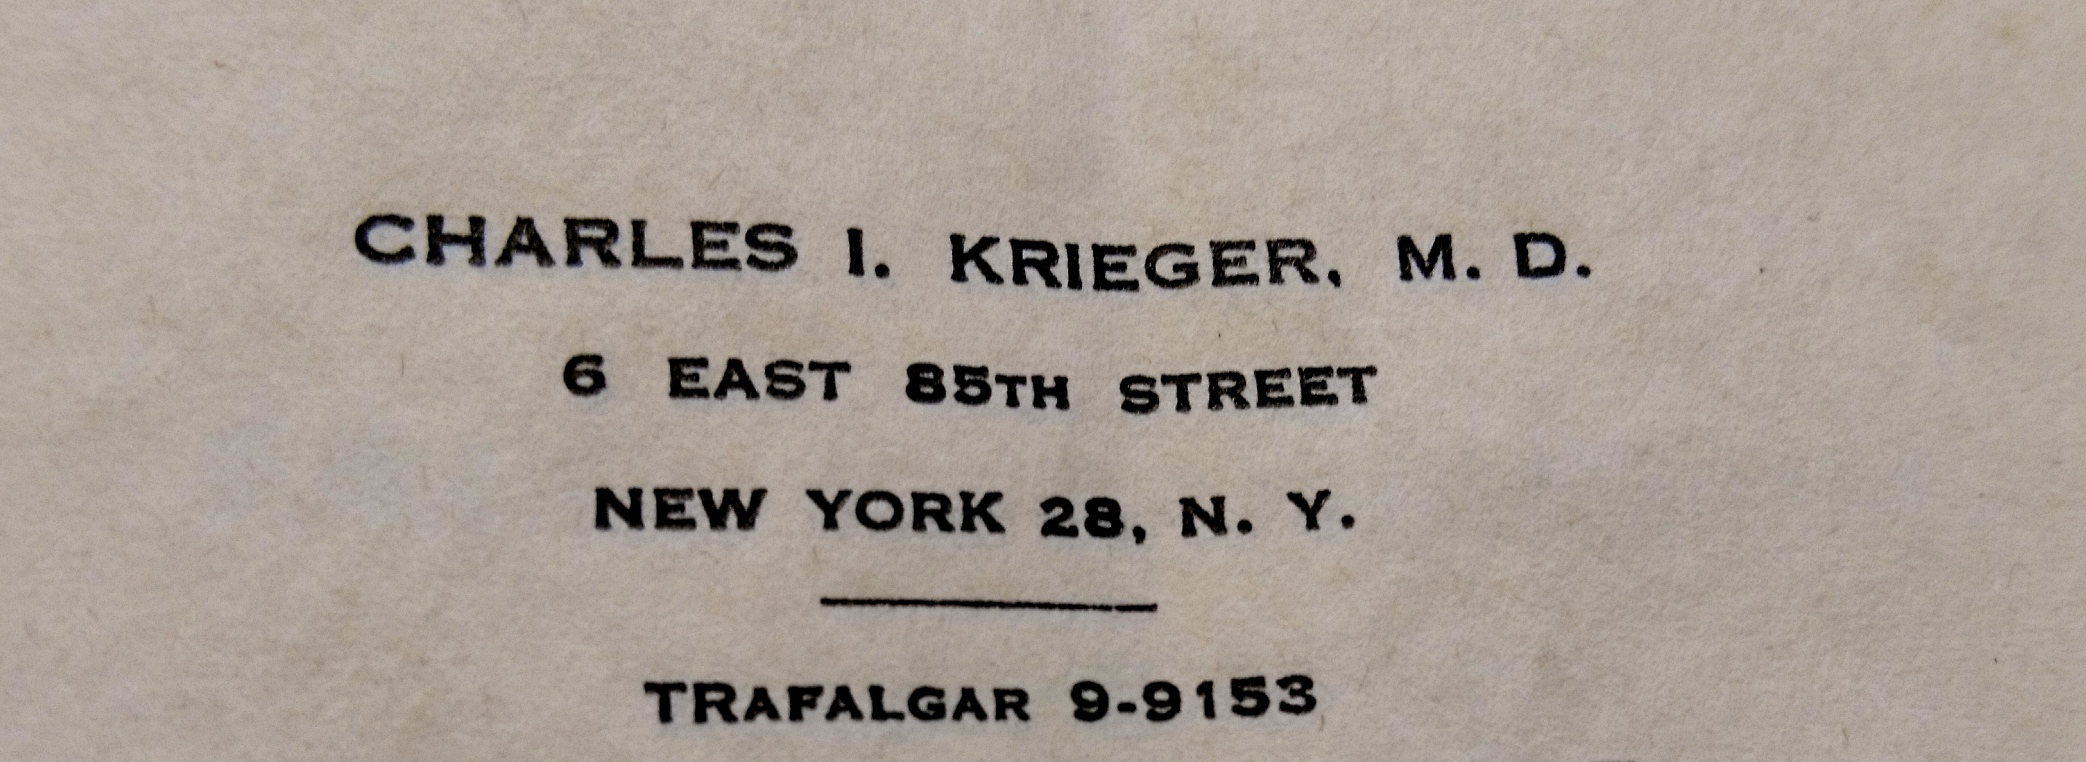 Briefkopf der Privatpraxis in New York, 1957, Quelle Entschädigungsbehörde Berlin
